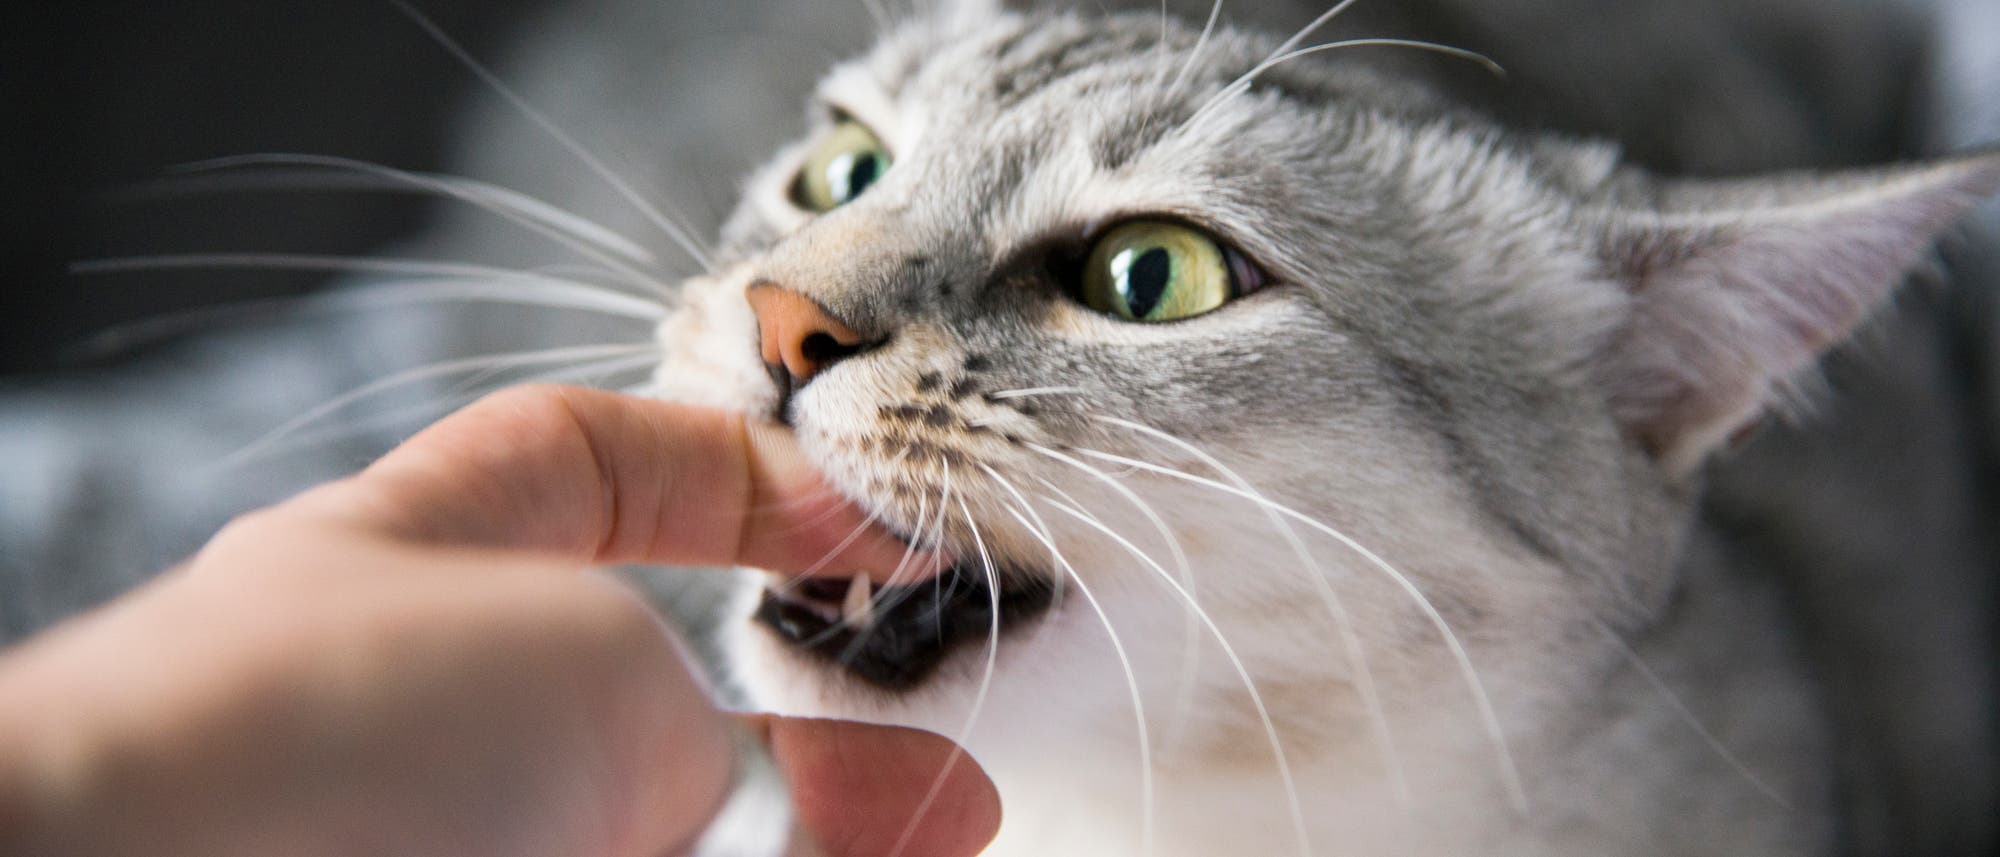 Manche Katzen haben ihre Besitzer zum Fressen gern